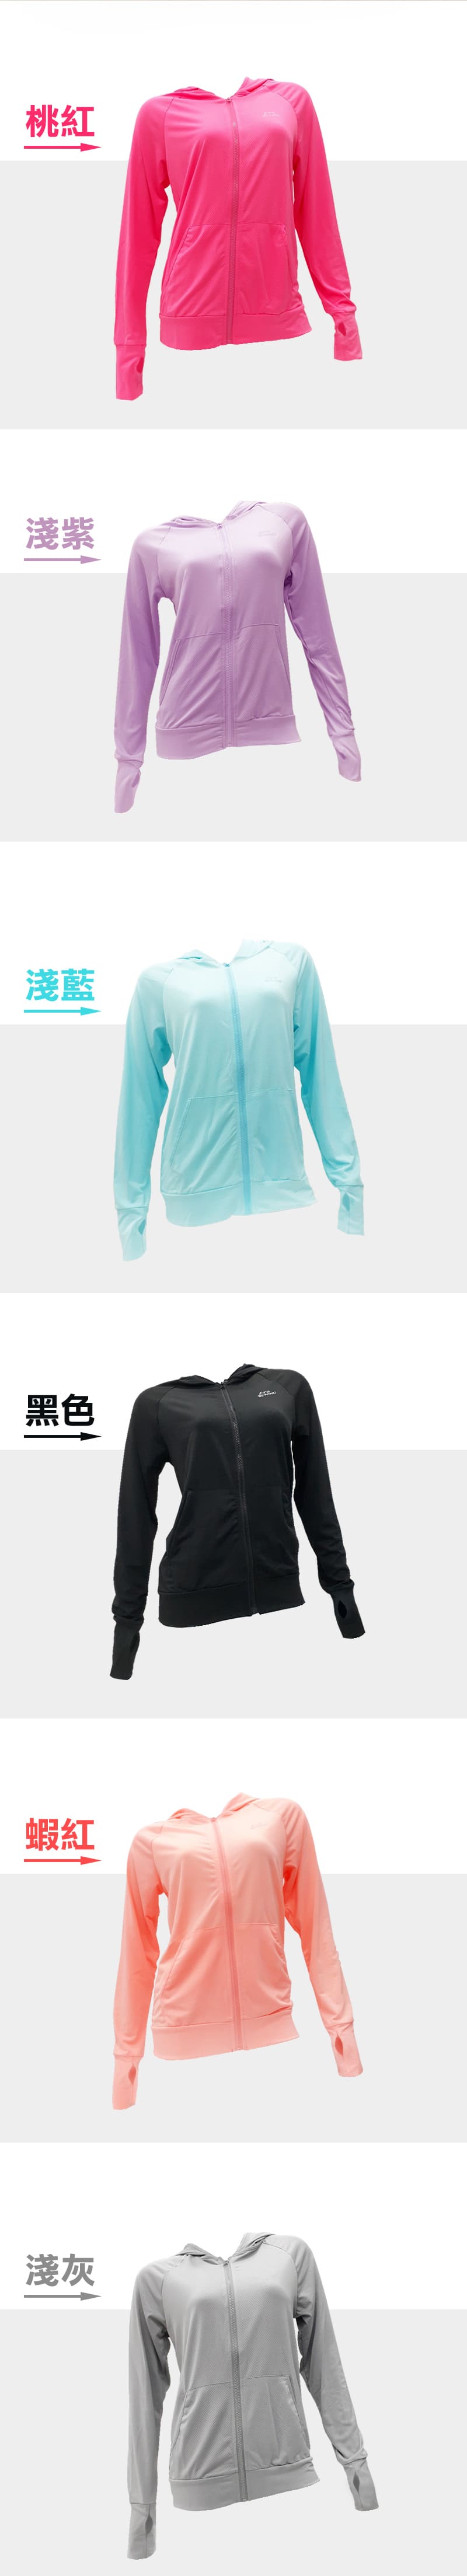 M-2XL涼感透氣抗UV輕量防曬外套 冰絲外套 6色可選